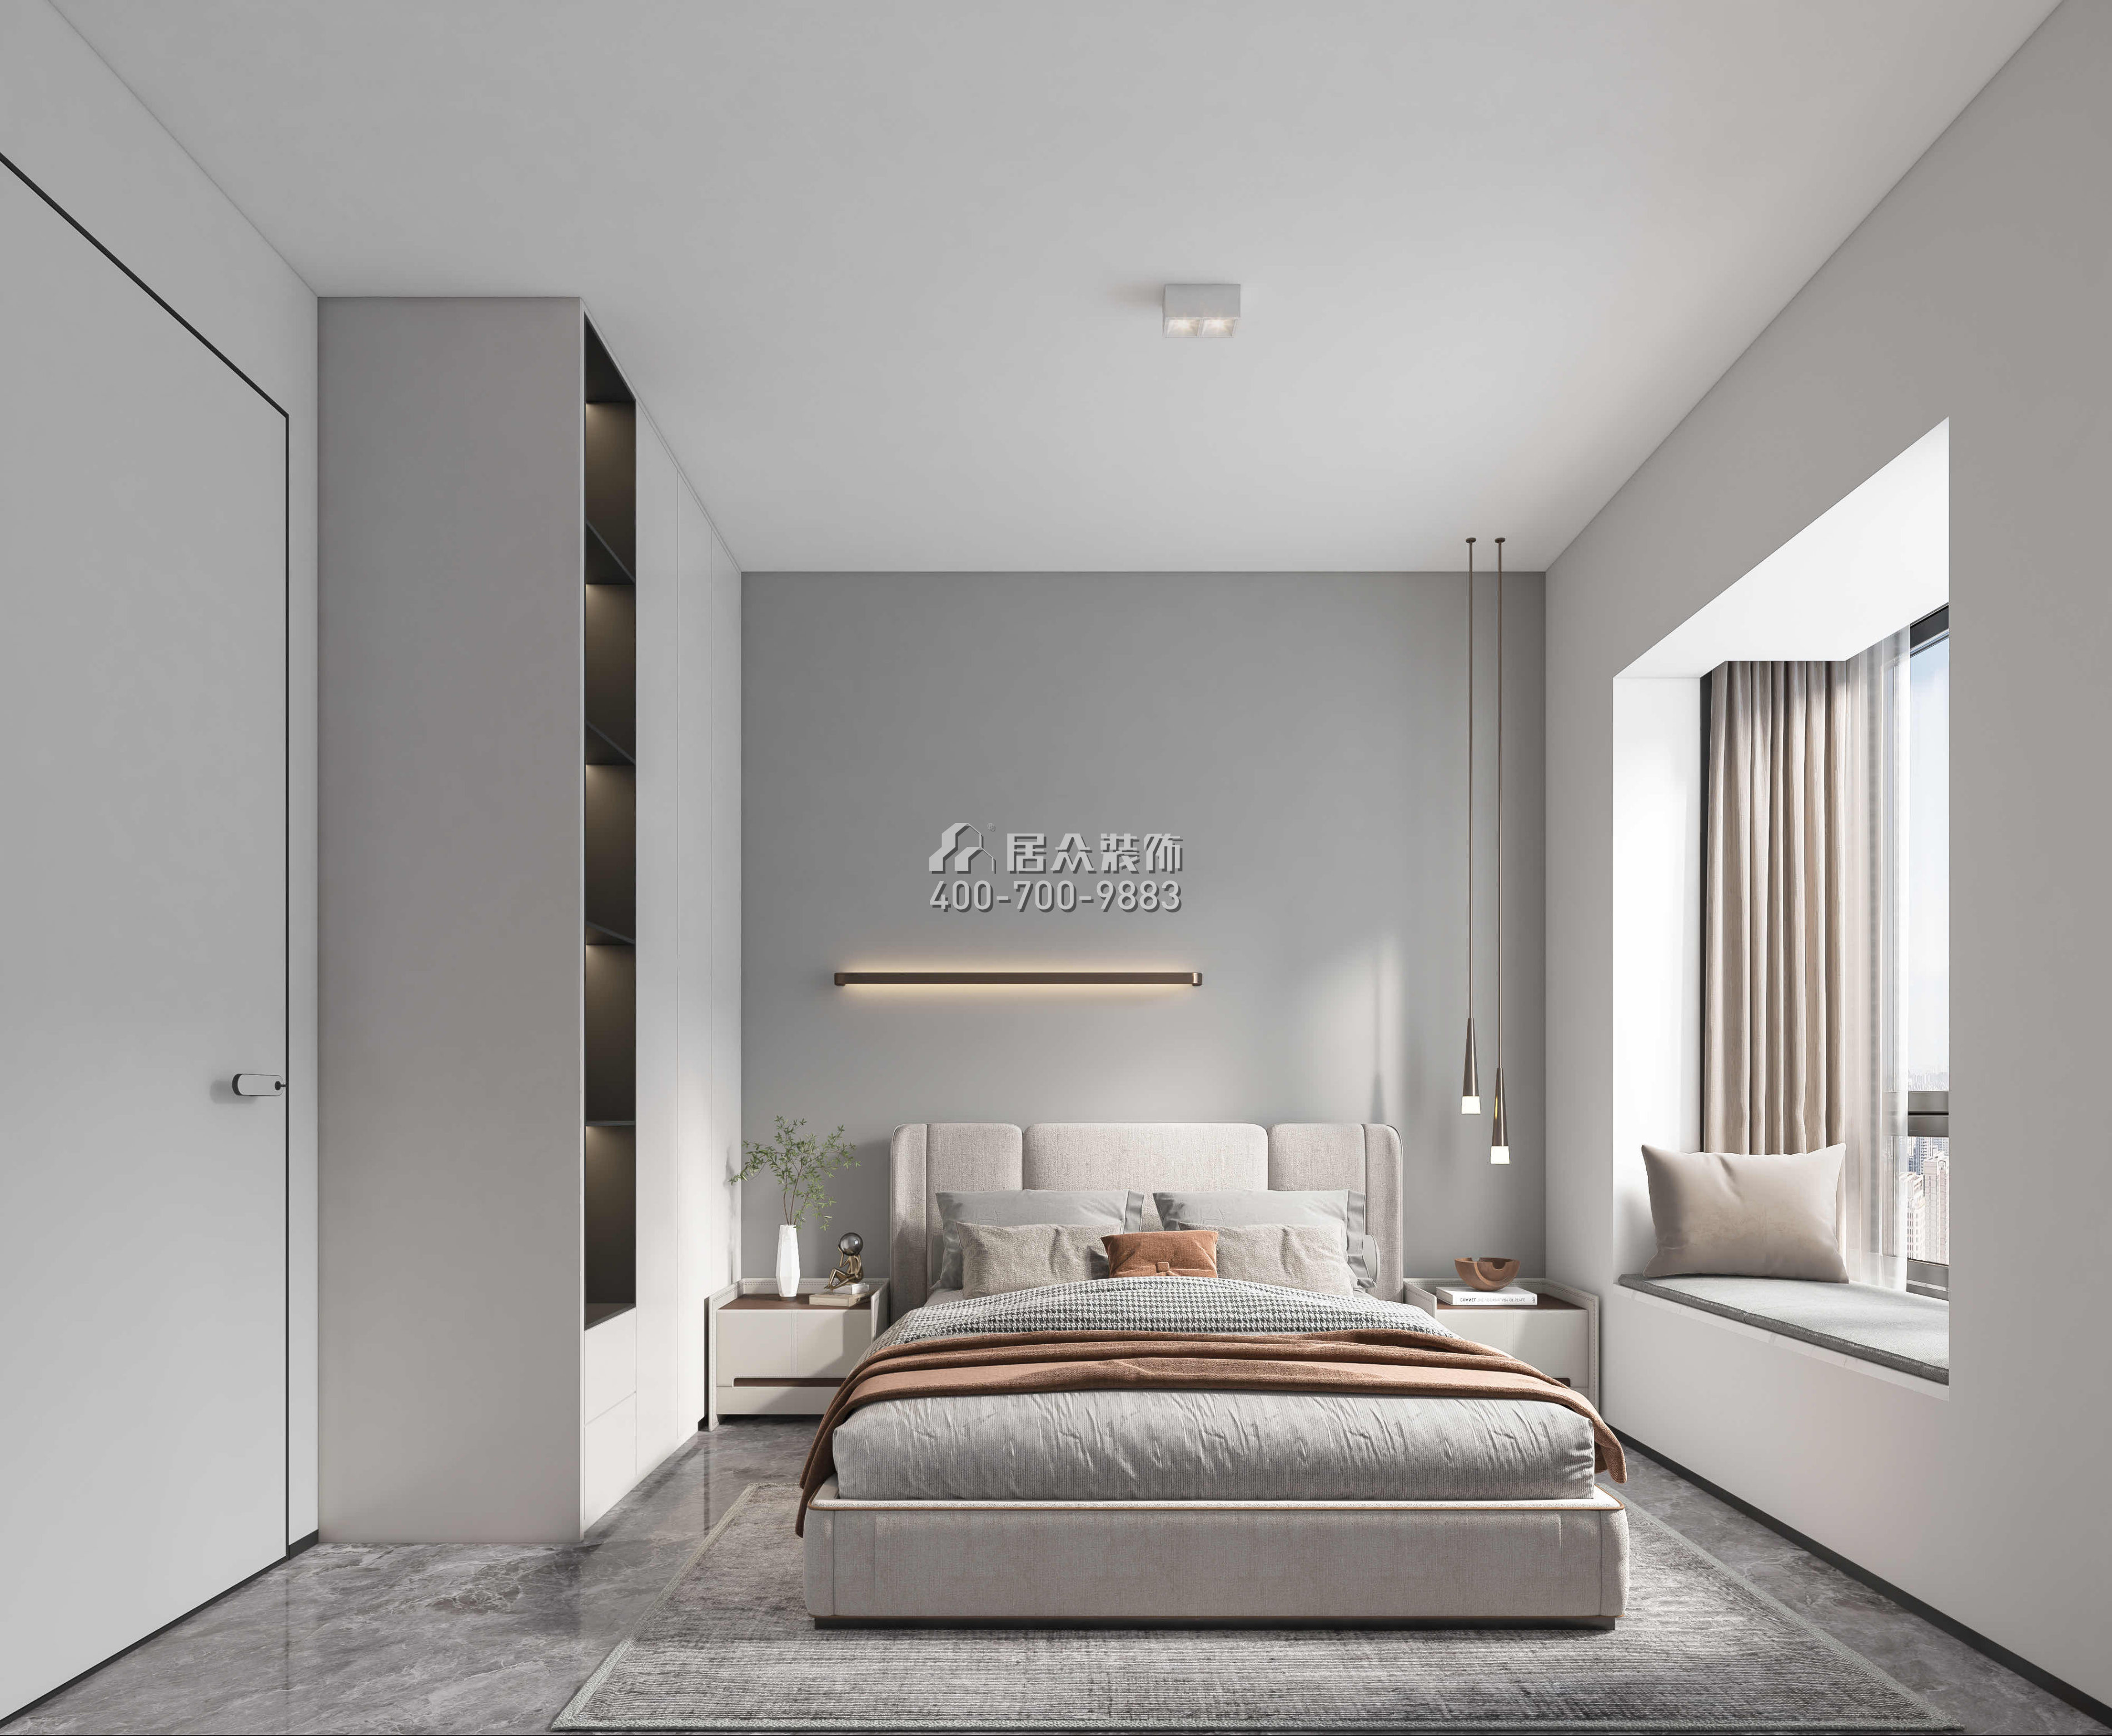 俊峰丽舍花园110平方米现代简约风格平层户型卧室装修效果图